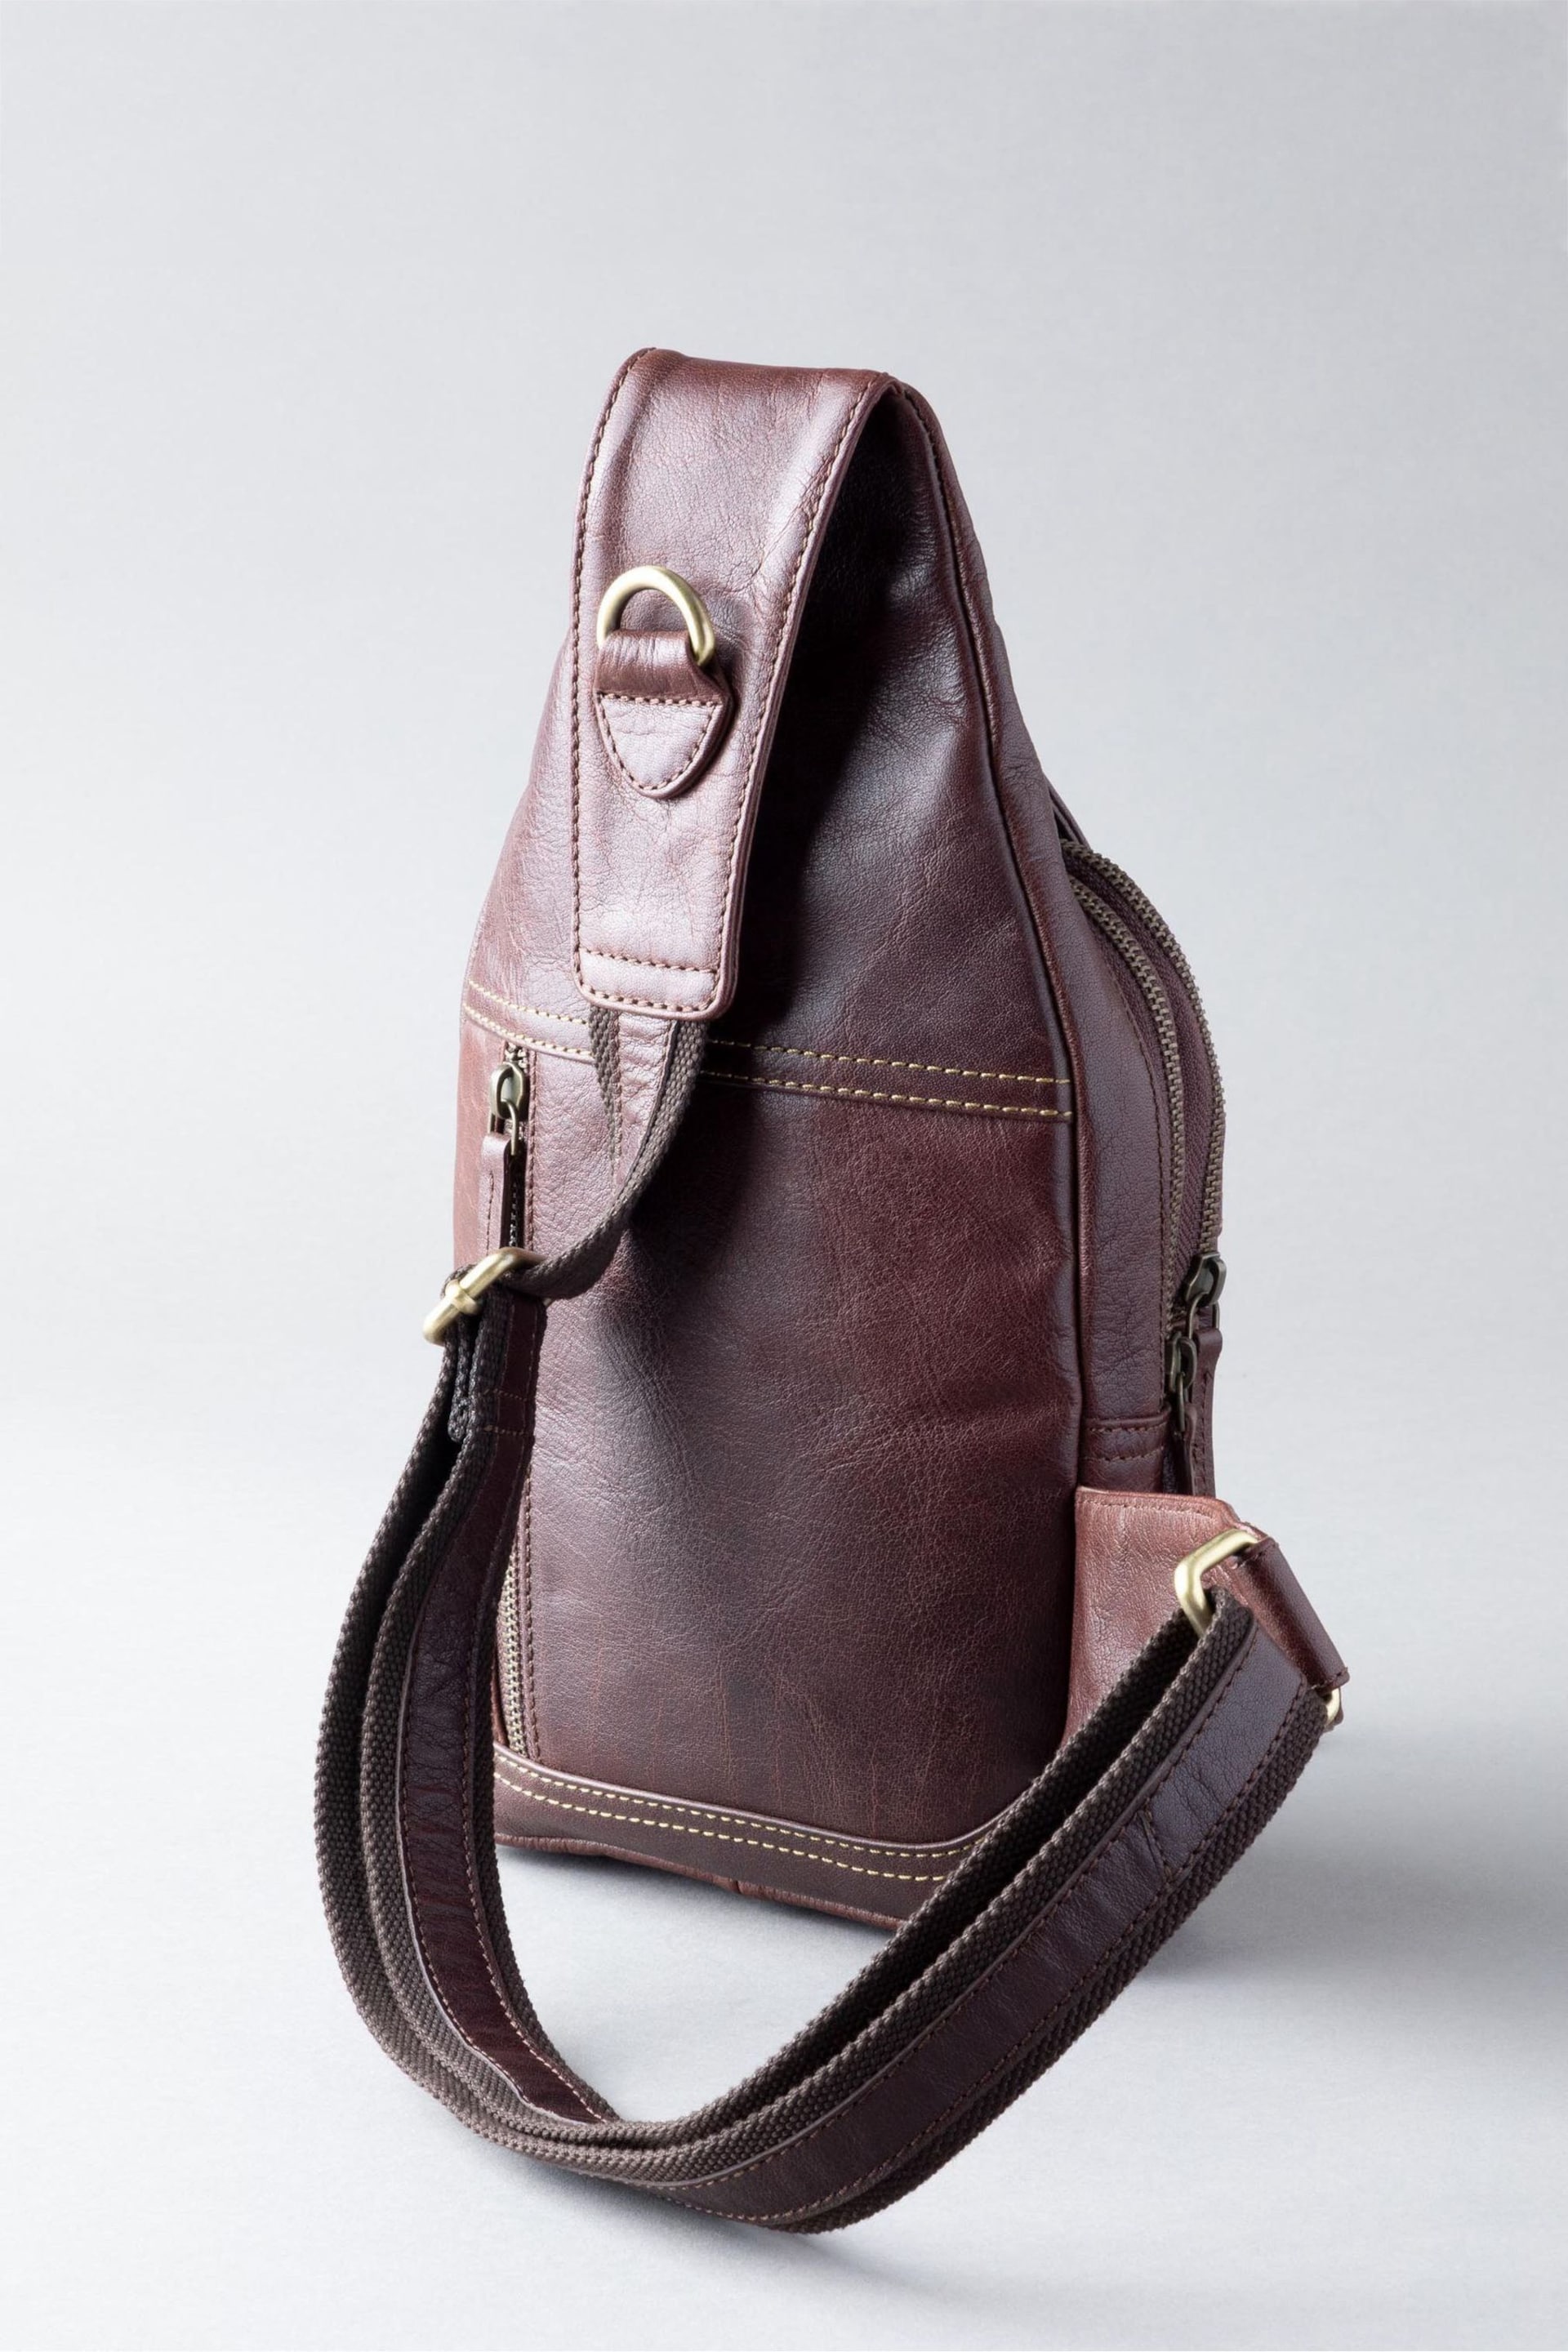 Lakeland Leather Keswick Leather Sling Bag - Image 2 of 4